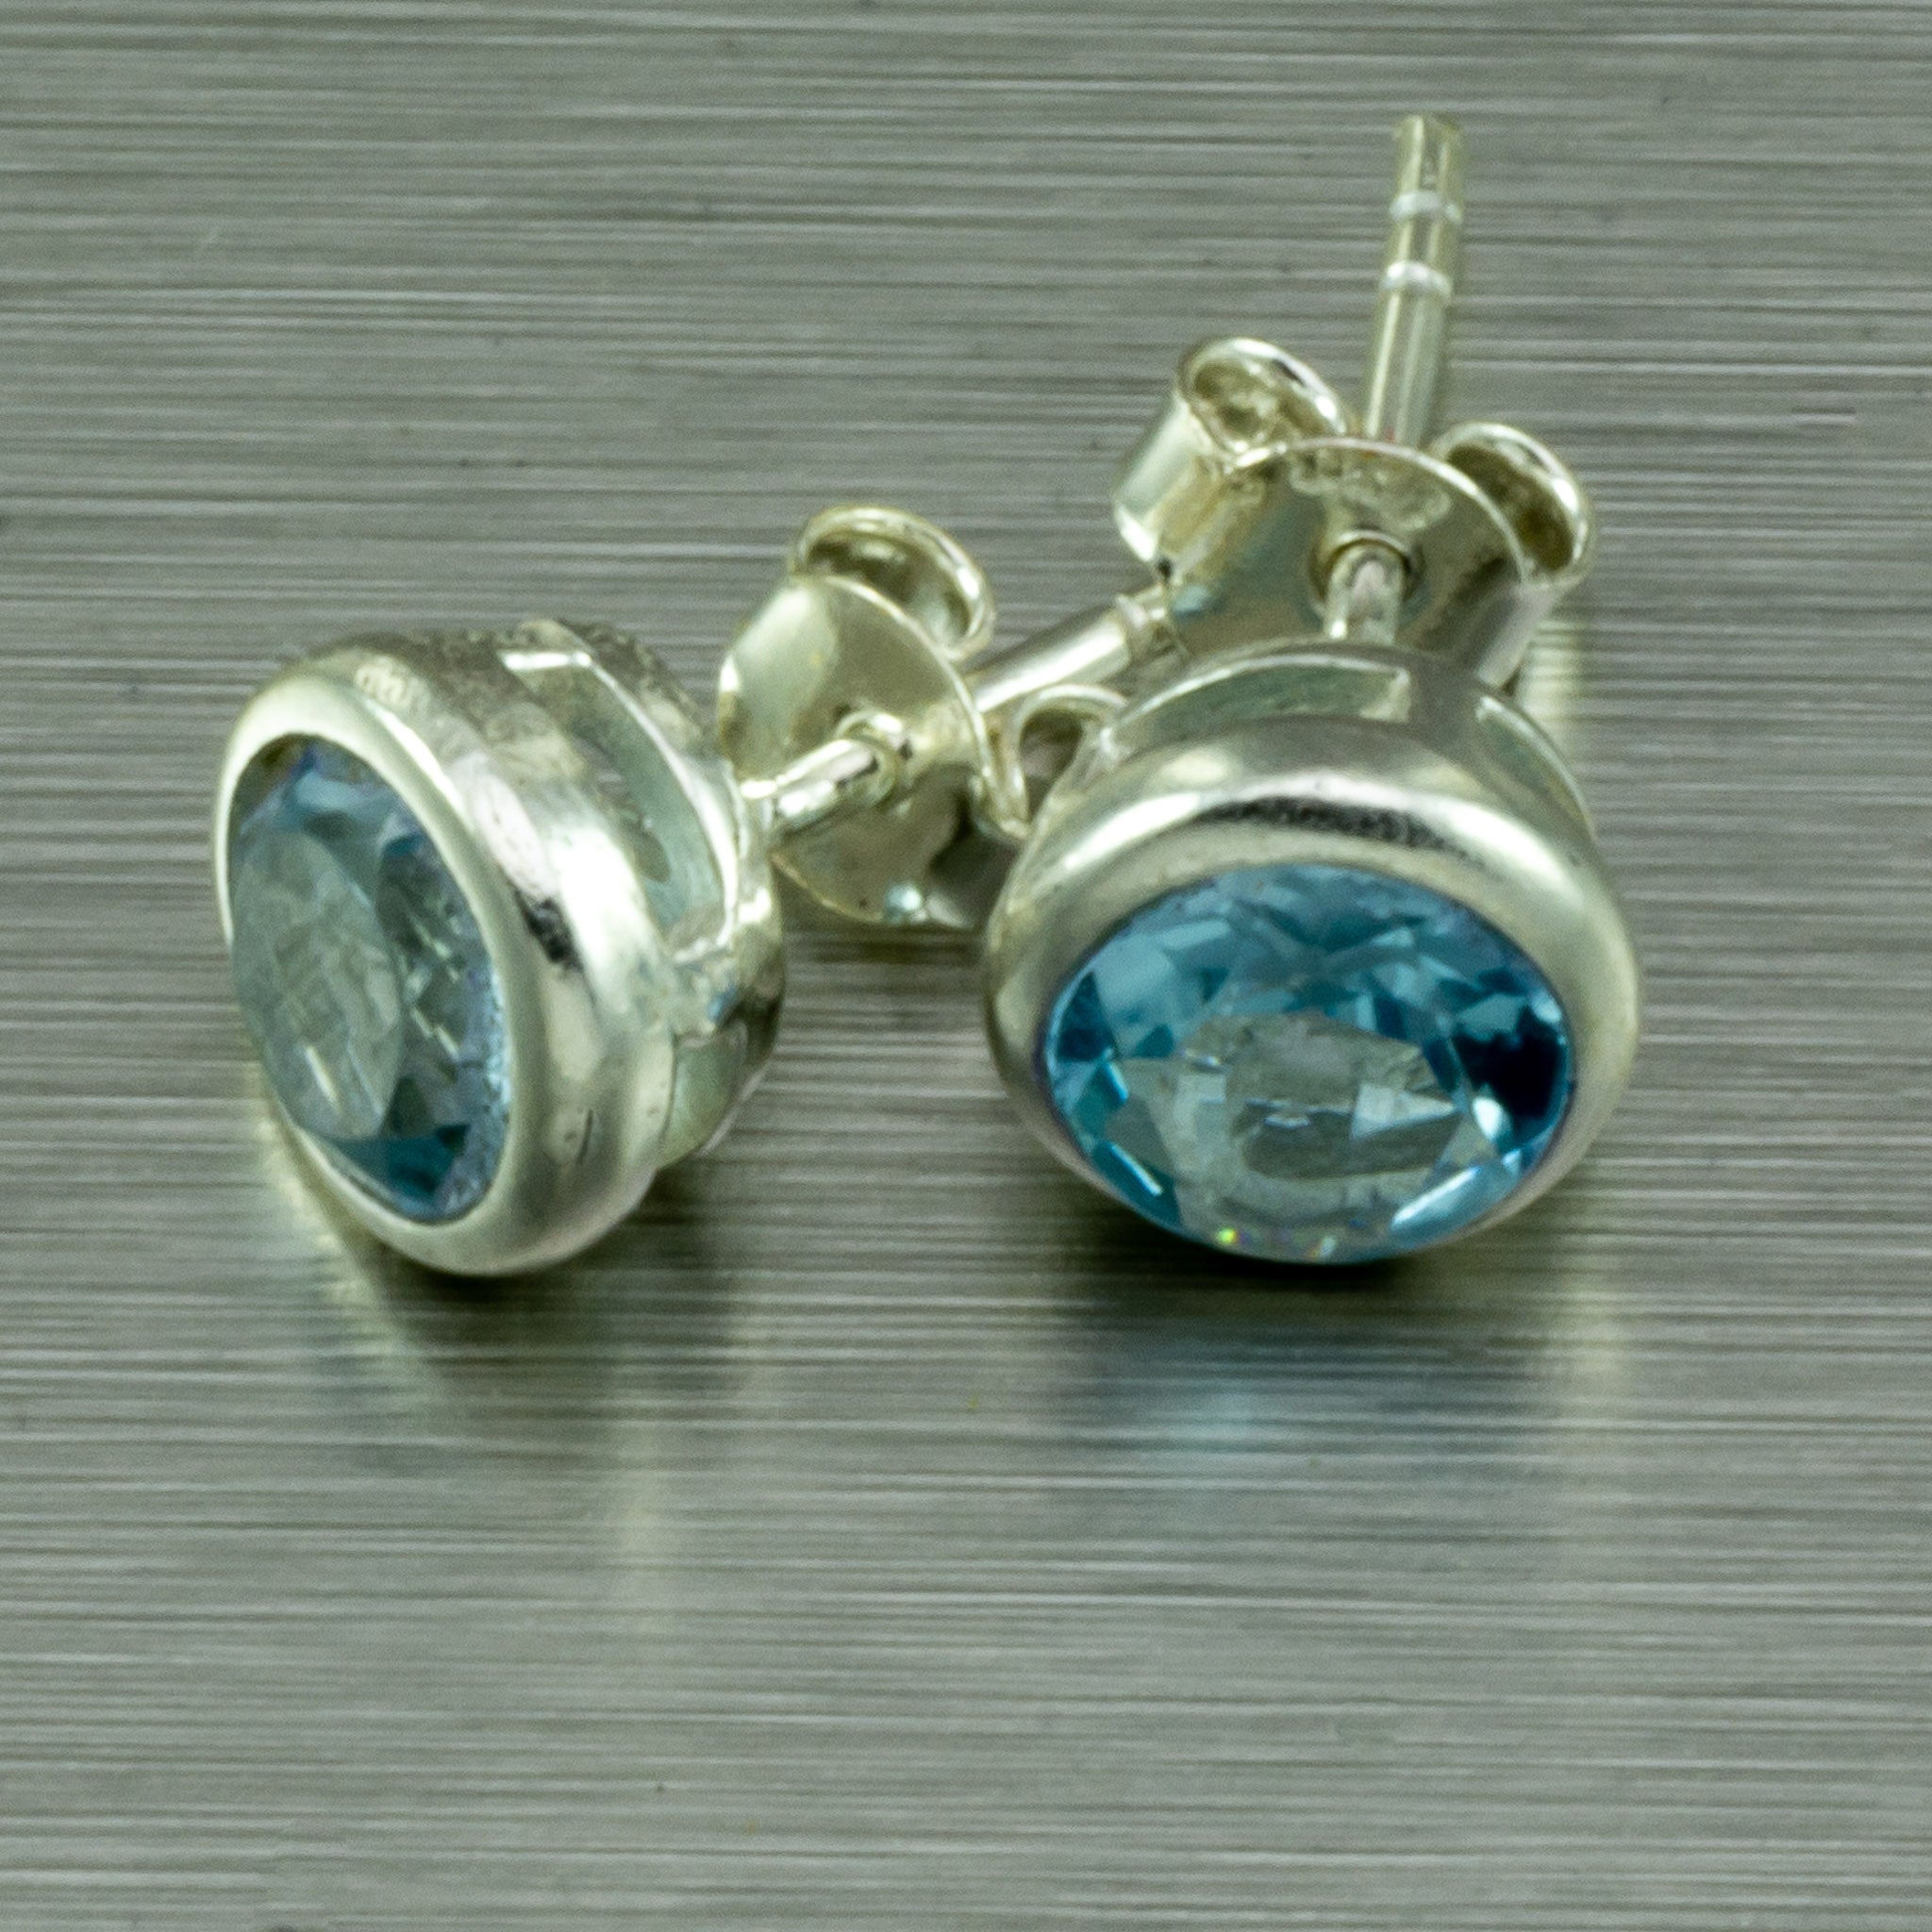 Sterling silver Blue Topaz stud earrings